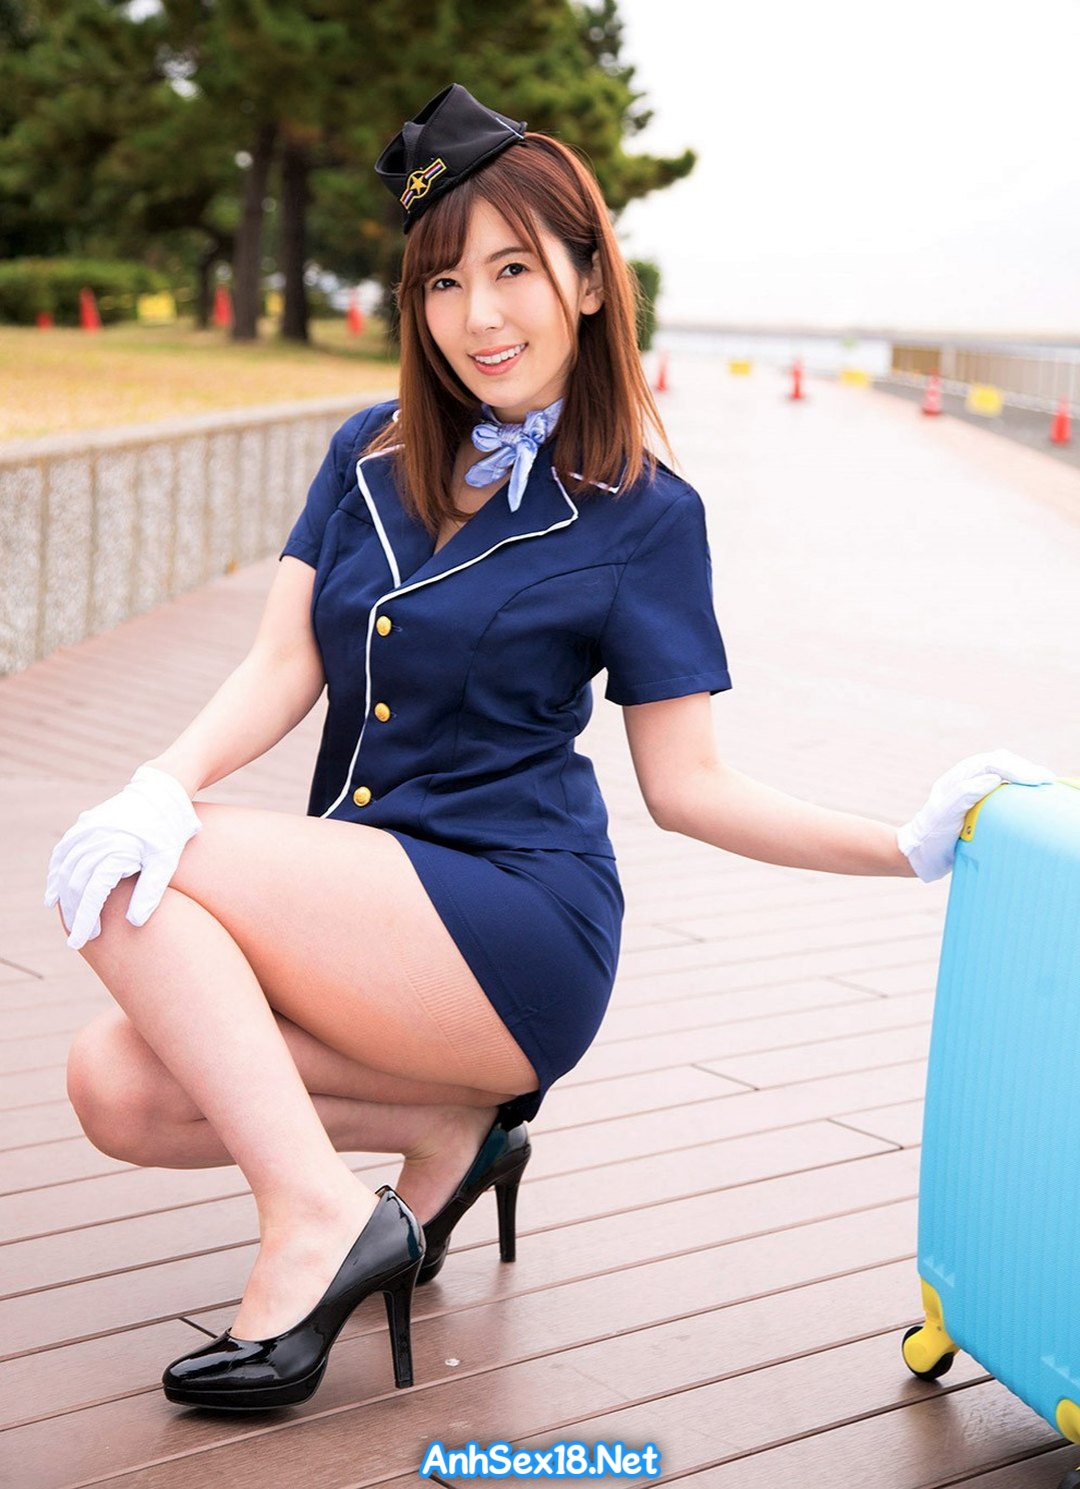 AnhSex18.Net | Nữ tiếp viên hàng không Yui Hatano